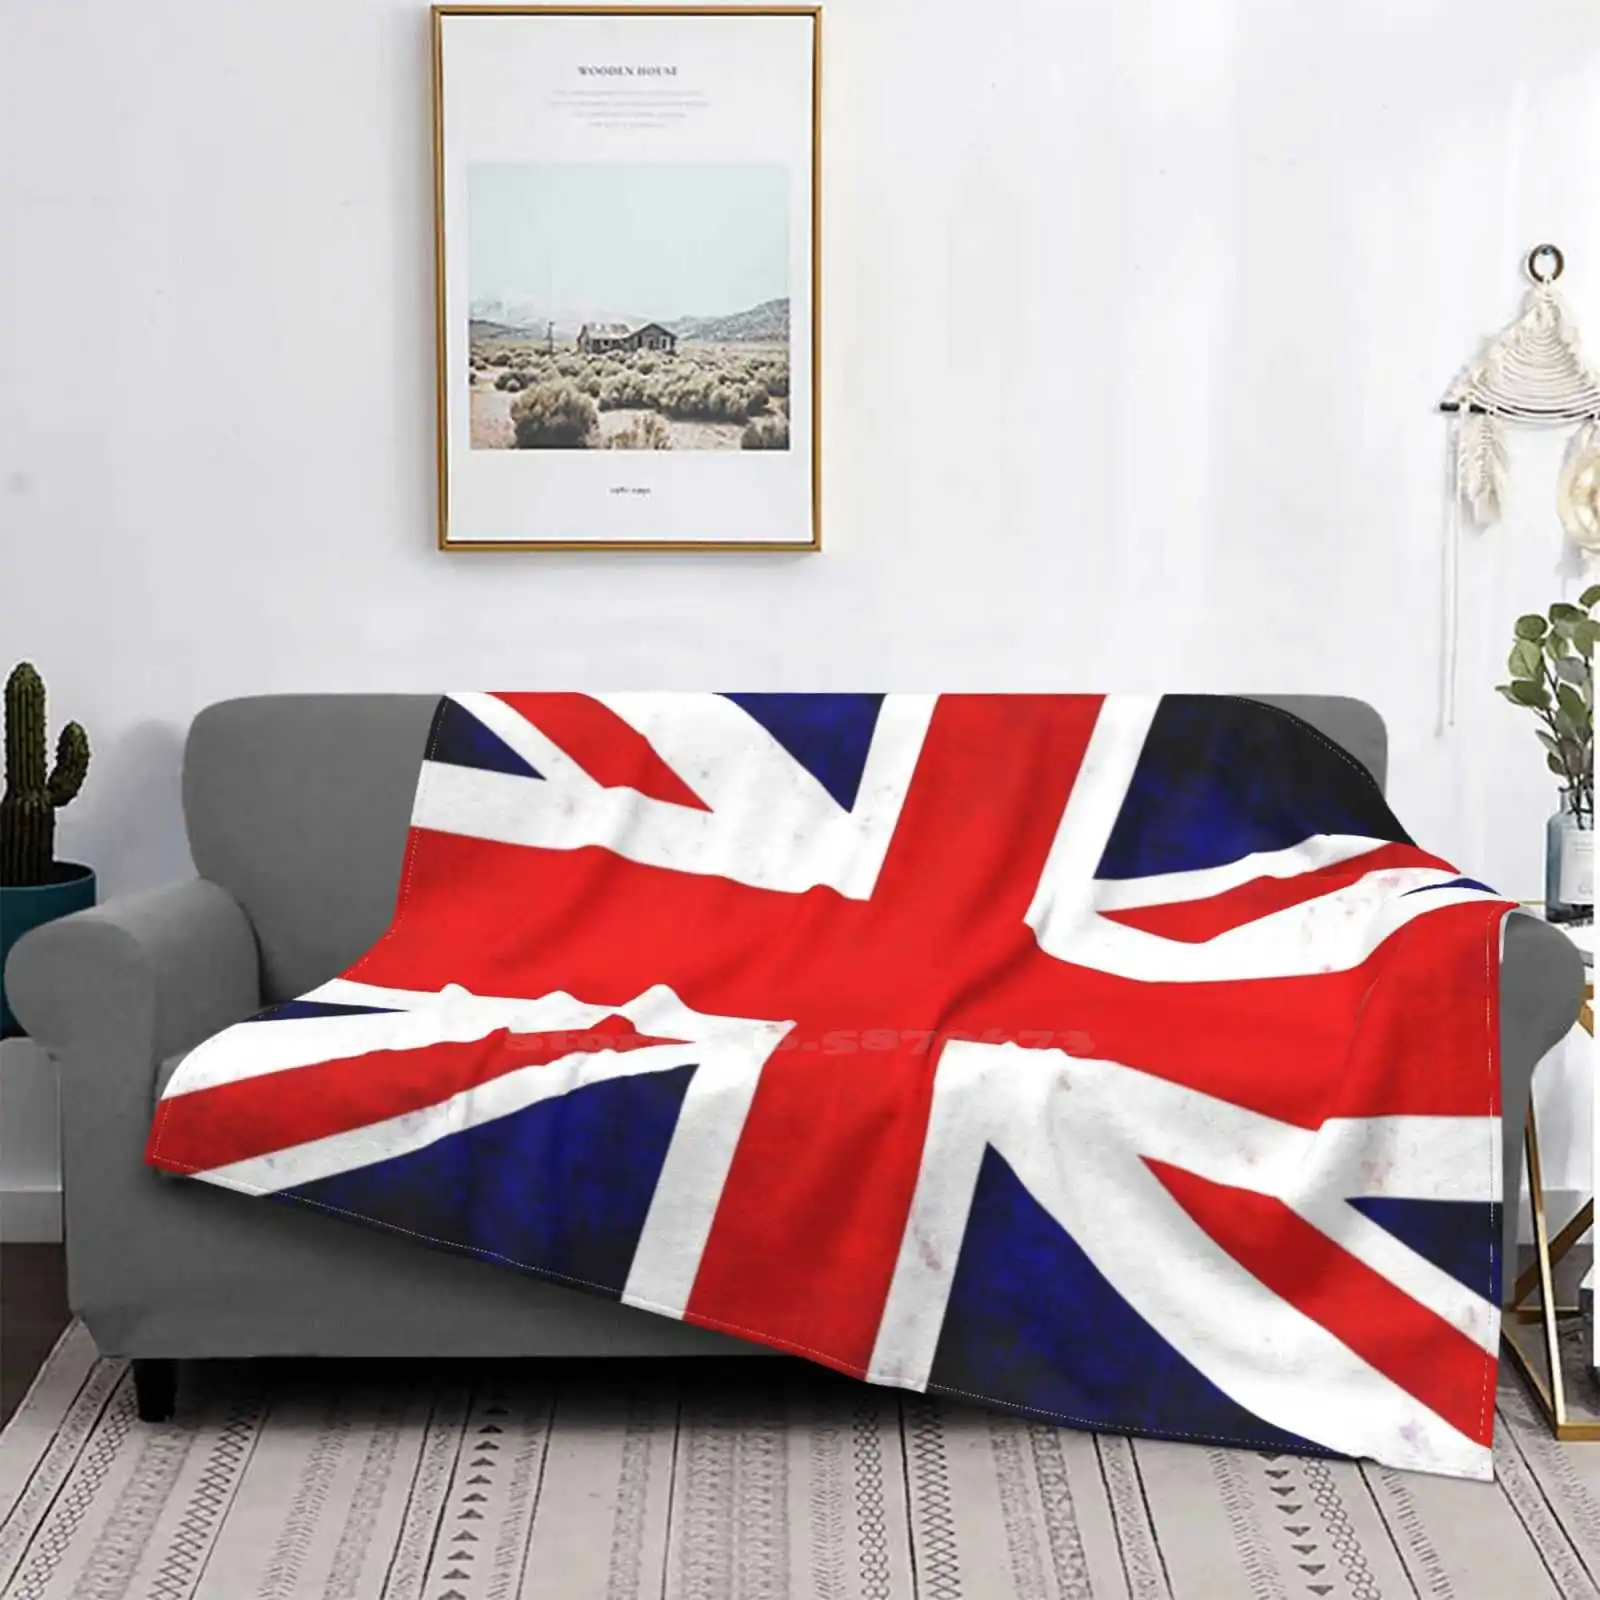 

Union Jack Low Price New Print Novelty Fashion Soft Warm Blanket Union Jack Flag Uk England Britain British United Kingdom